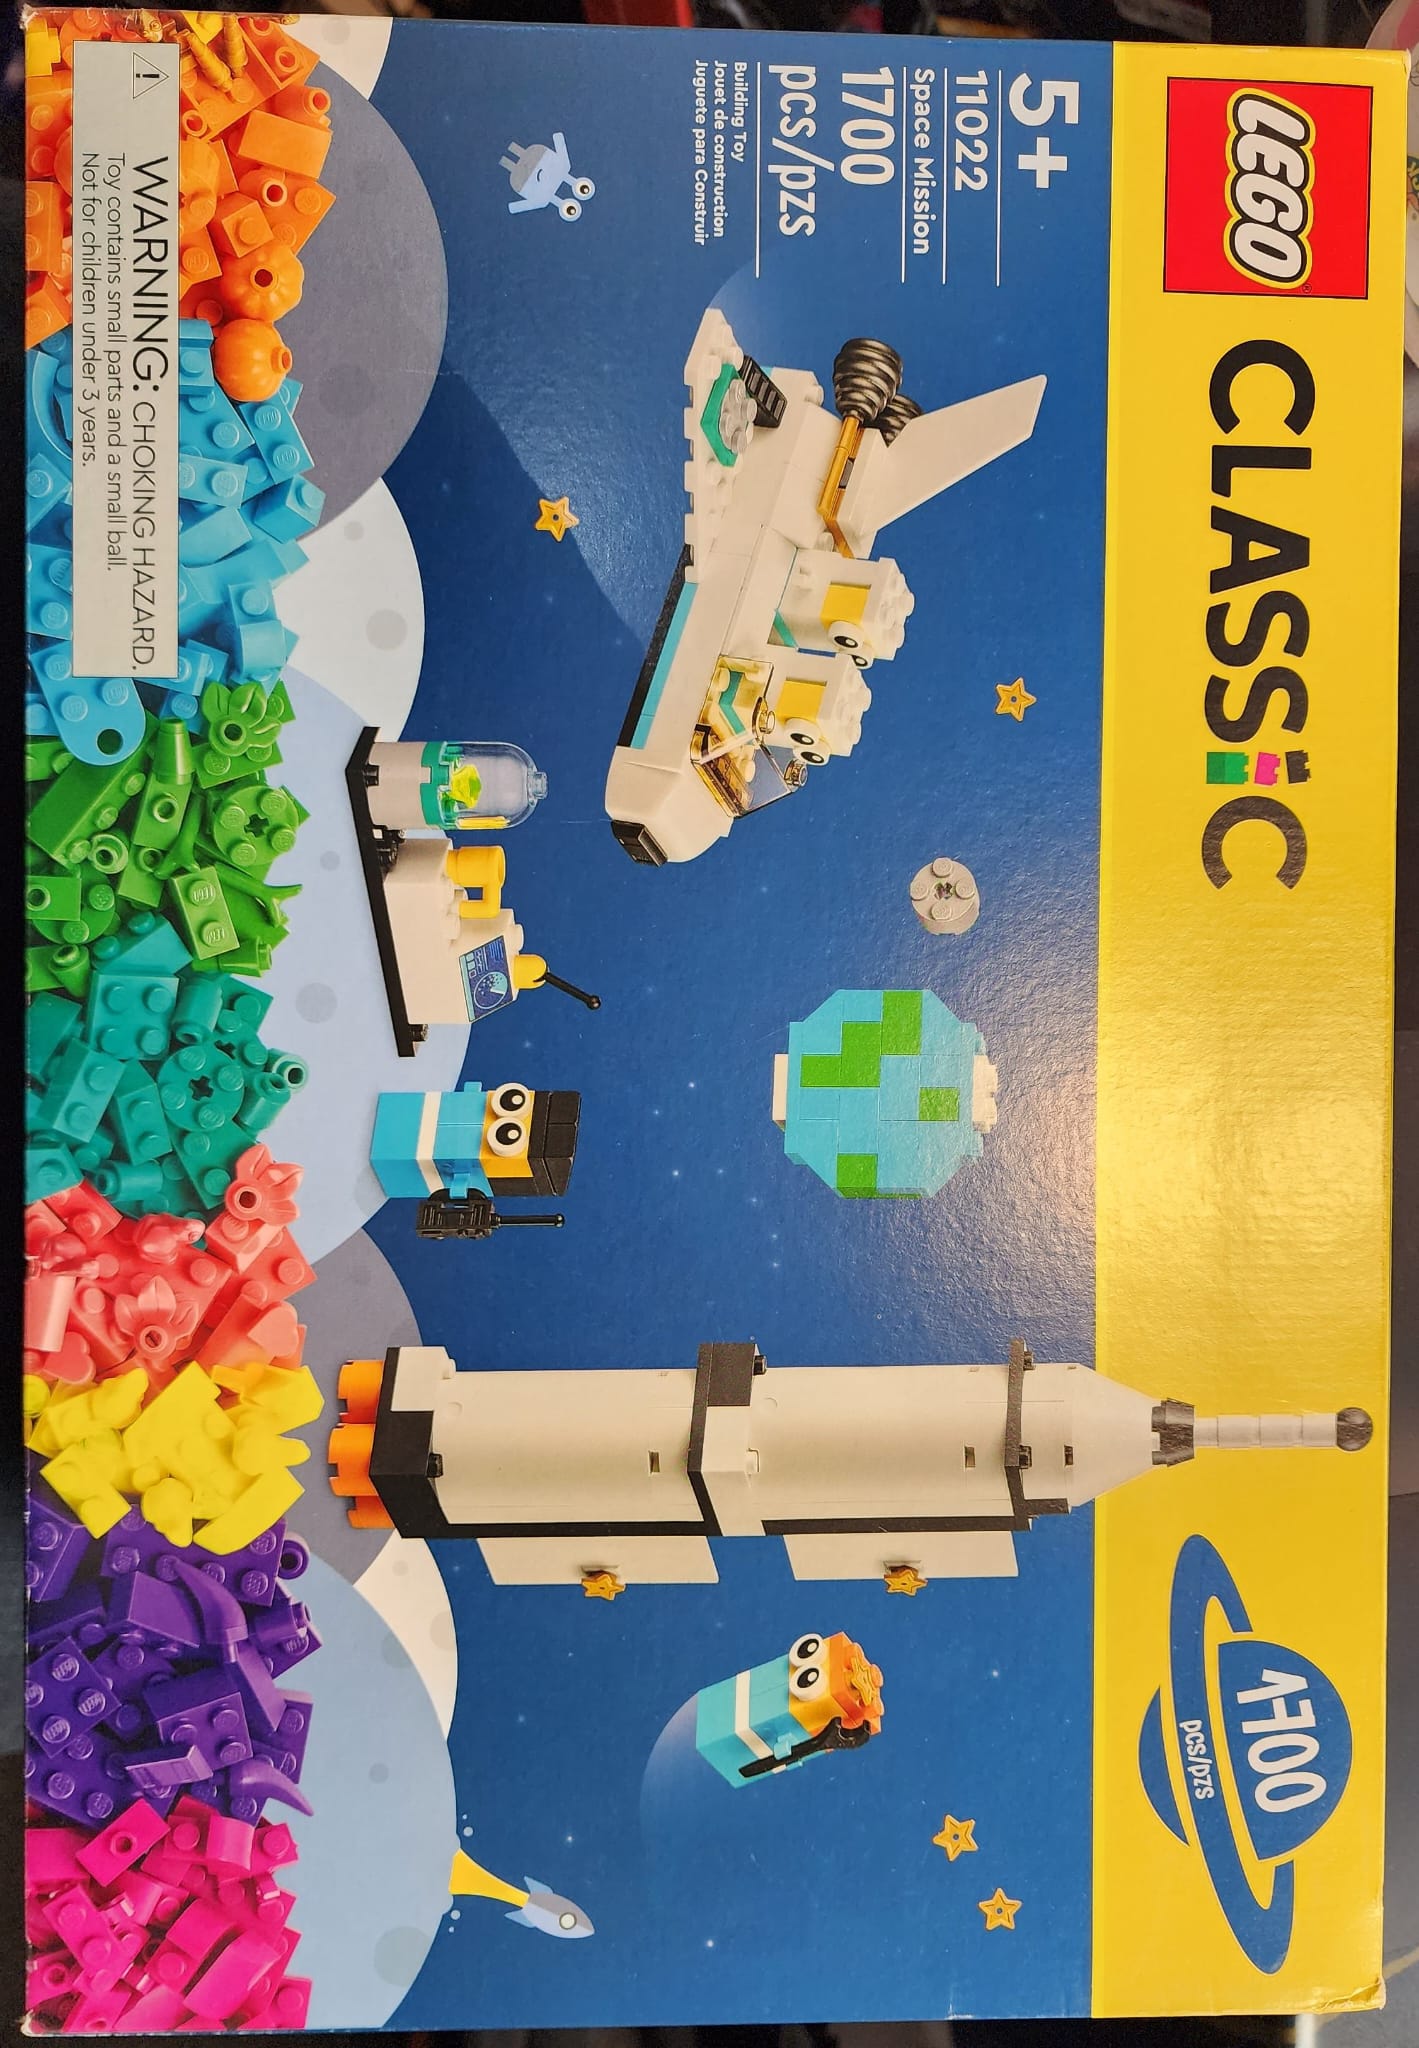 Lego Classic - 1700 Pcs